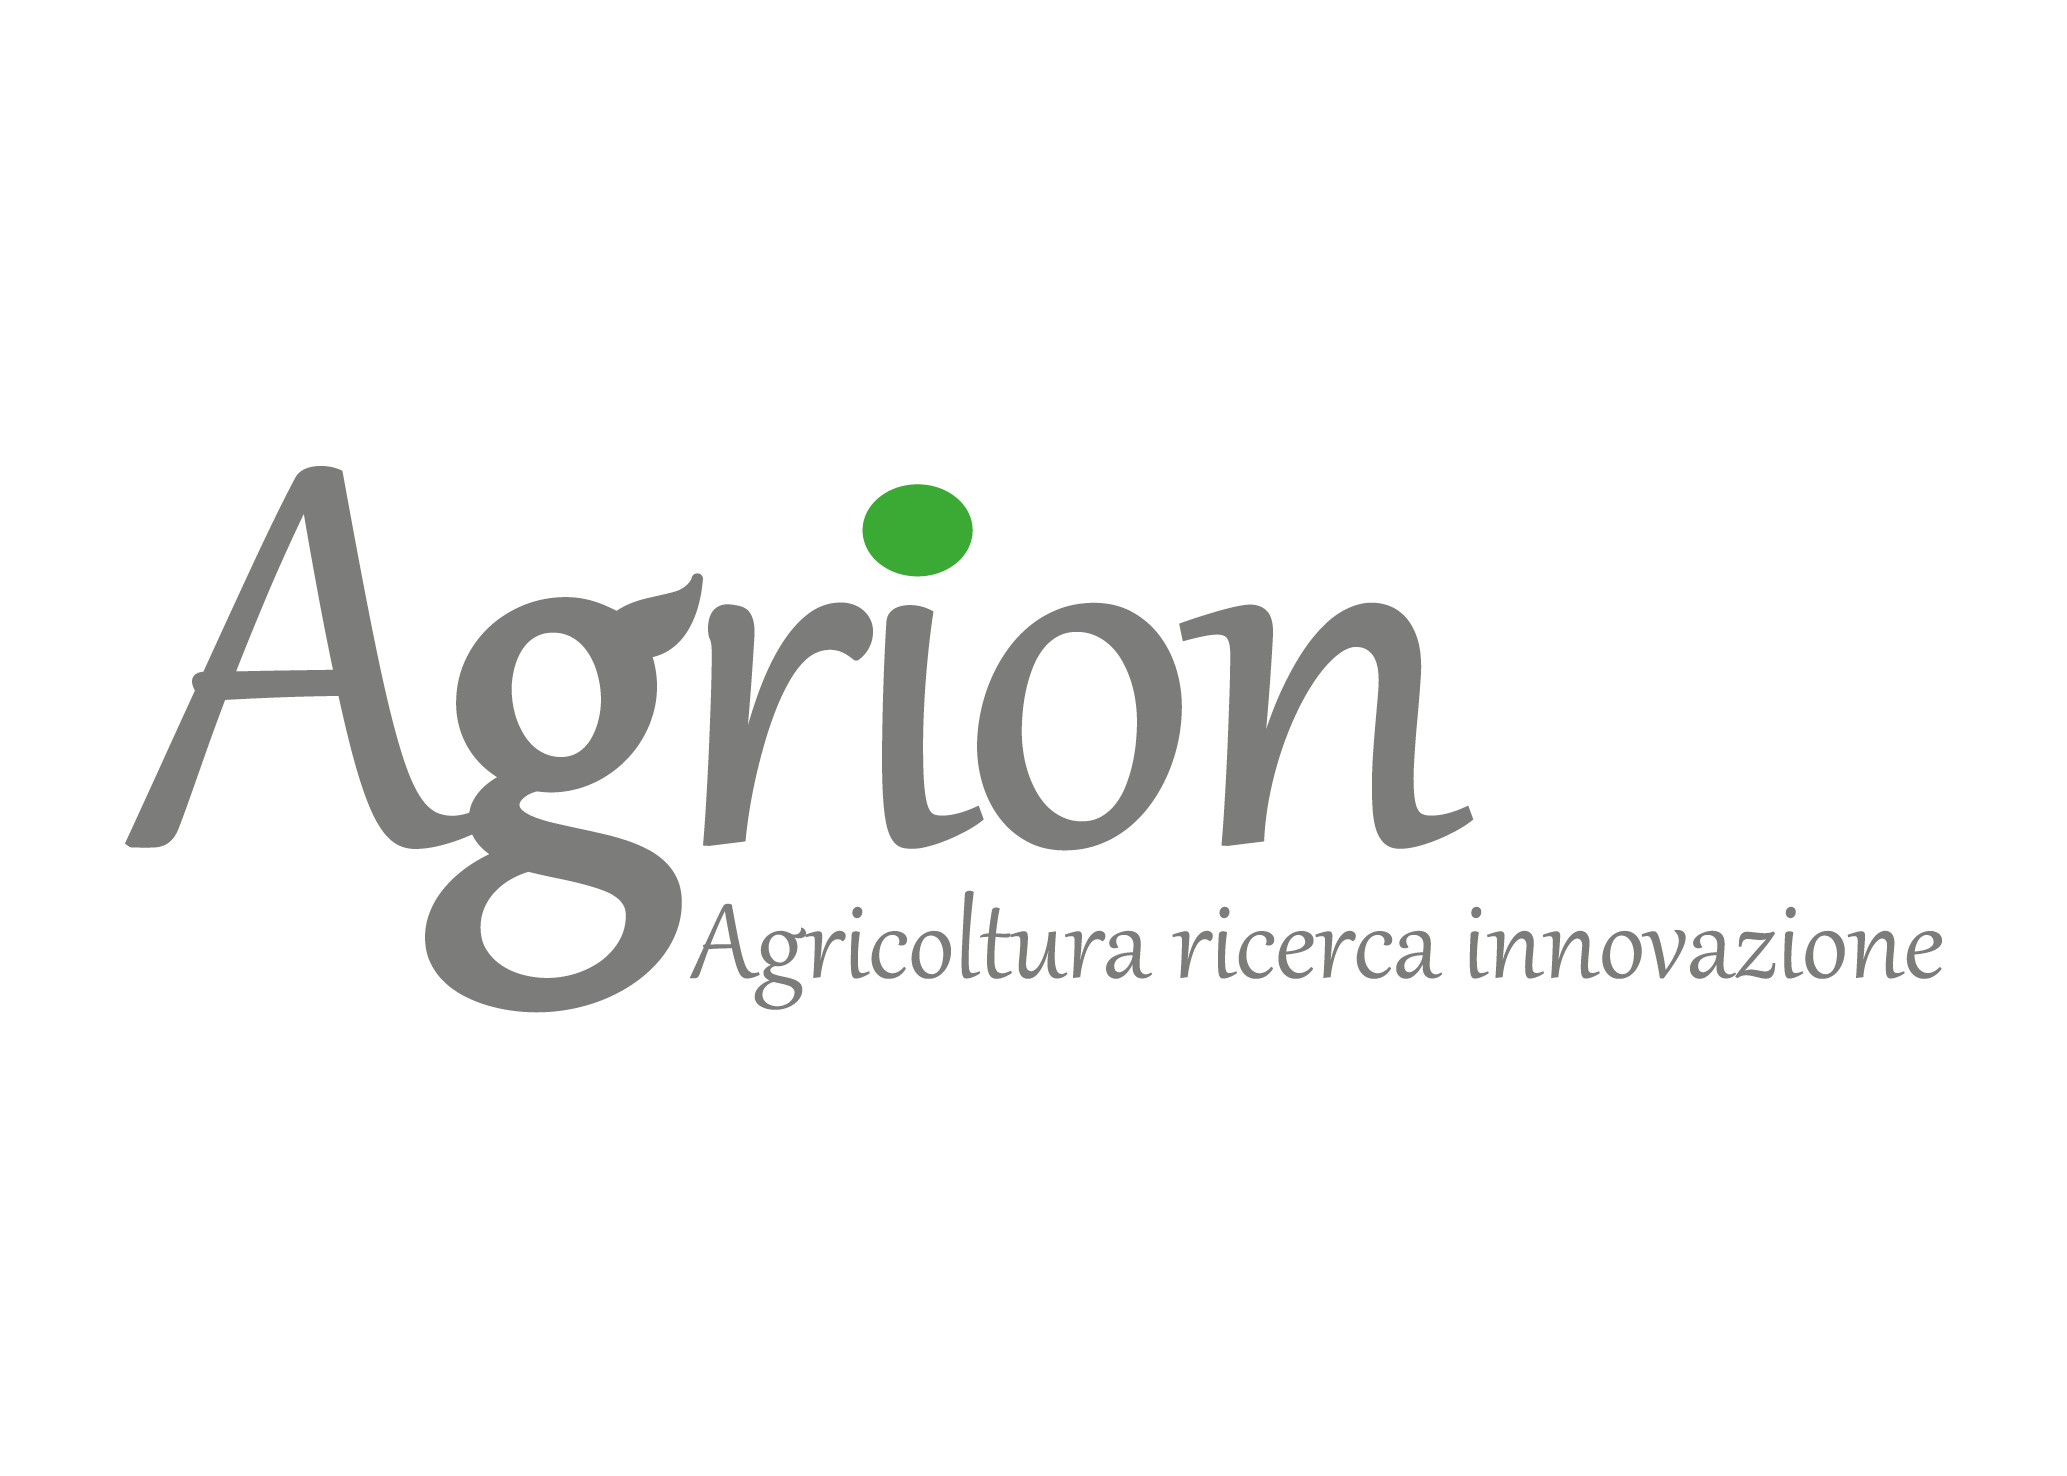 Agrion-Fondazione per la ricerca l'innovazione e lo sviluppo tecnologico dell'agricoltura piemontese 